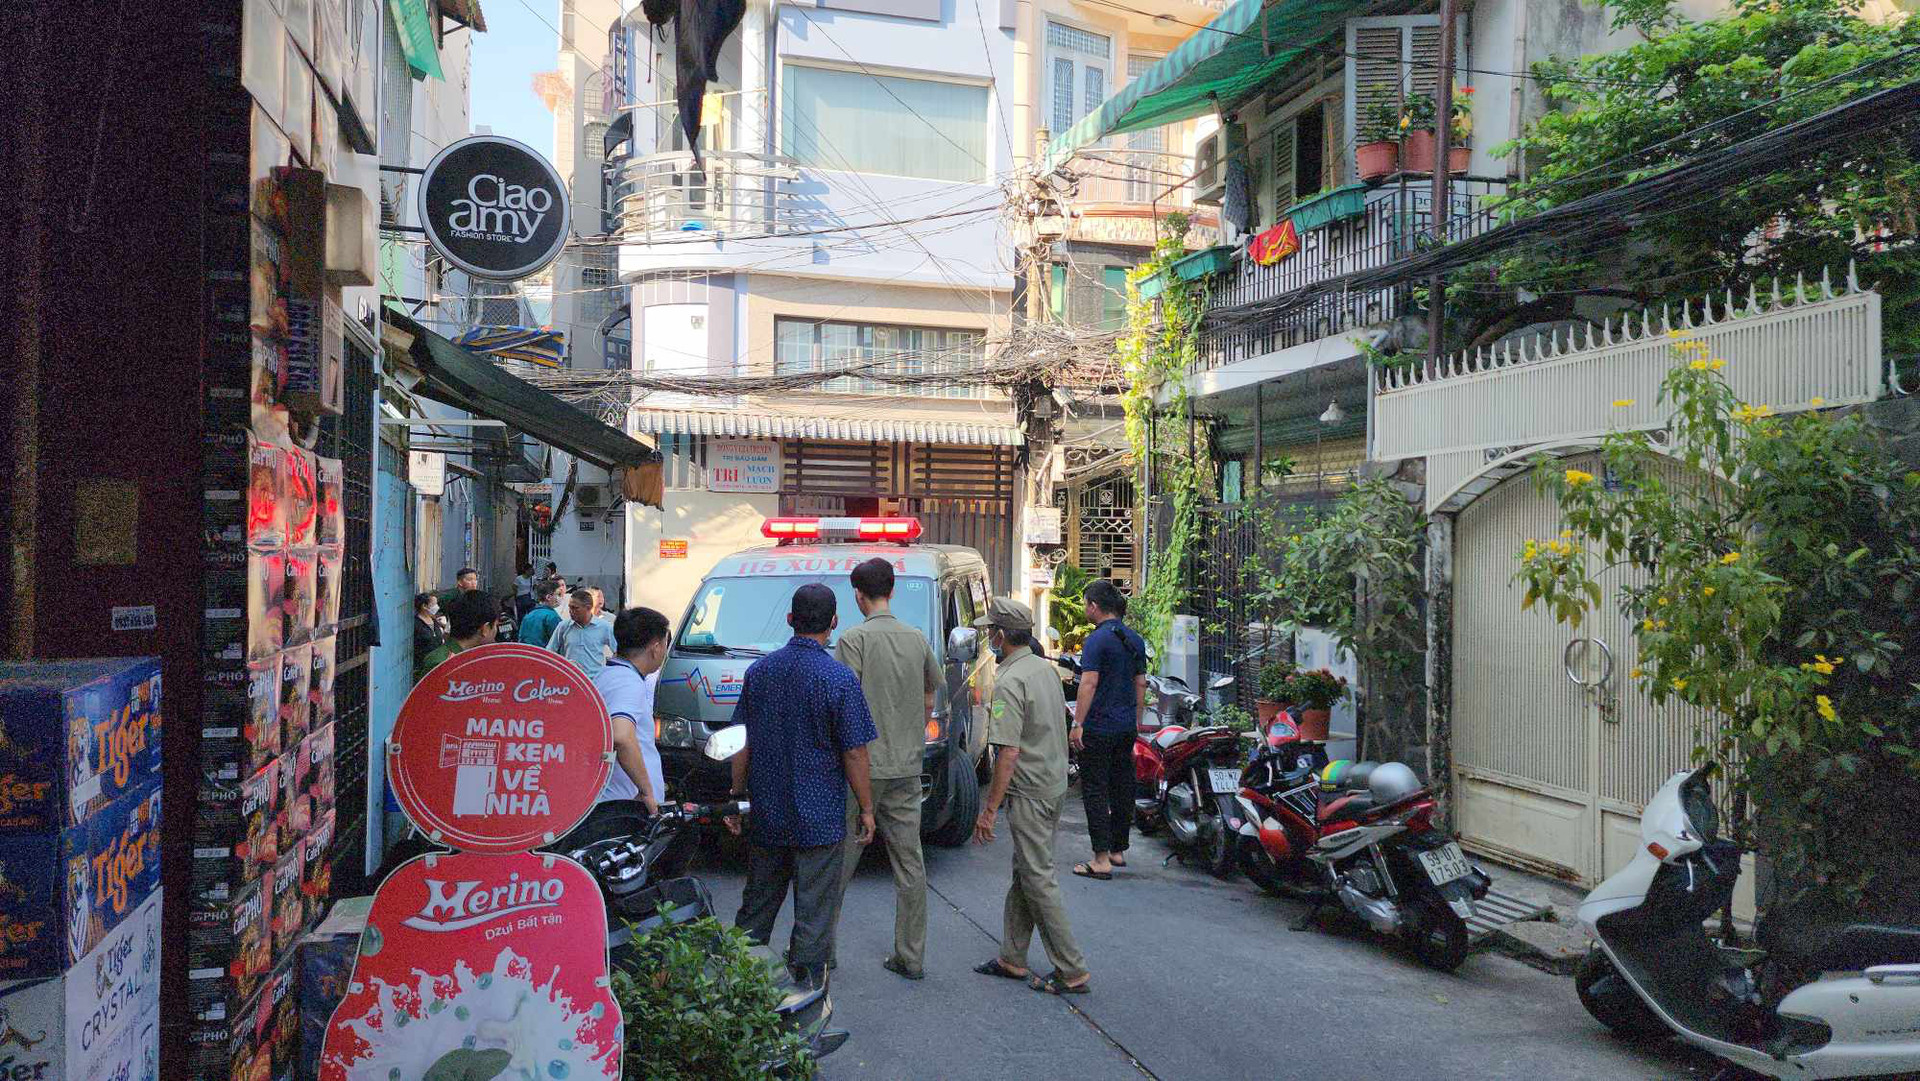 Lúc 8h45, một xe cấp cứu tiếp tục đến hiện trường - Ảnh: MINH HÒA